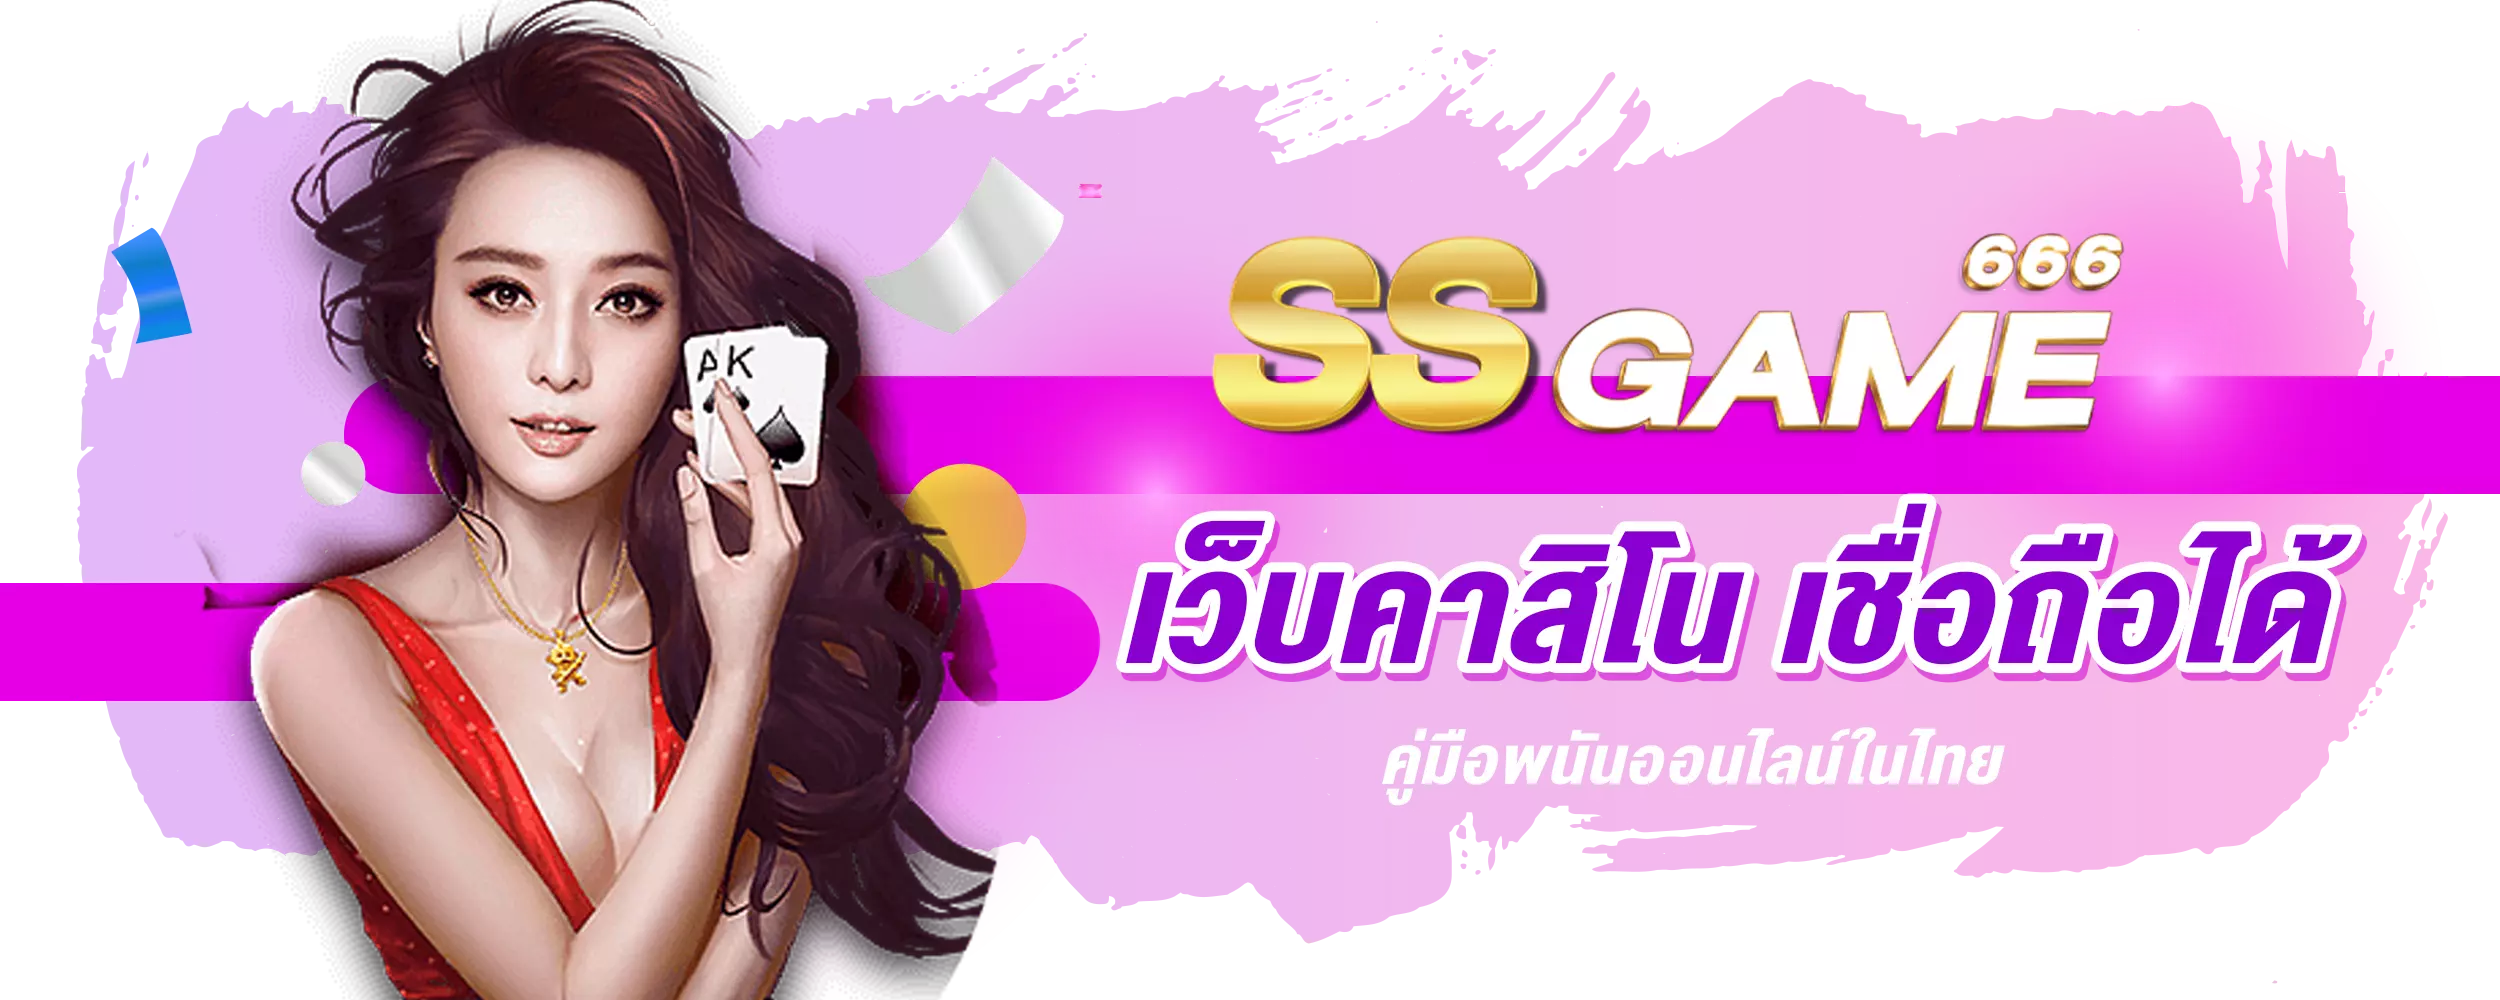 เว็บคาสิโน เชื่อถือได้ คู่มือพนันออนไลน์ในไทย